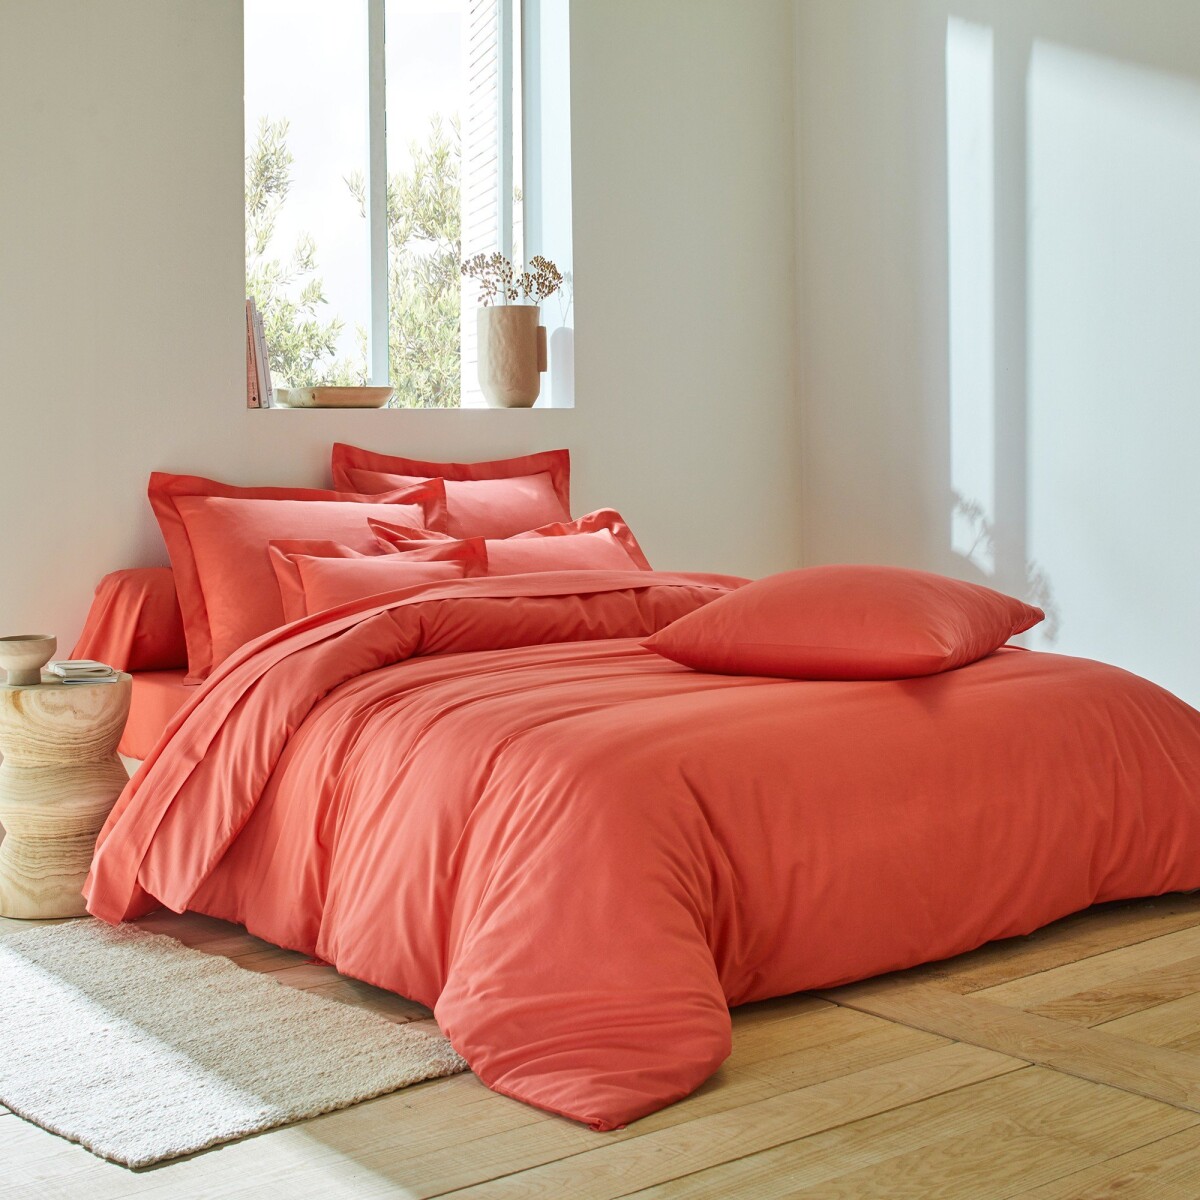 Jednofarebná posteľná bielizeň z bavlny